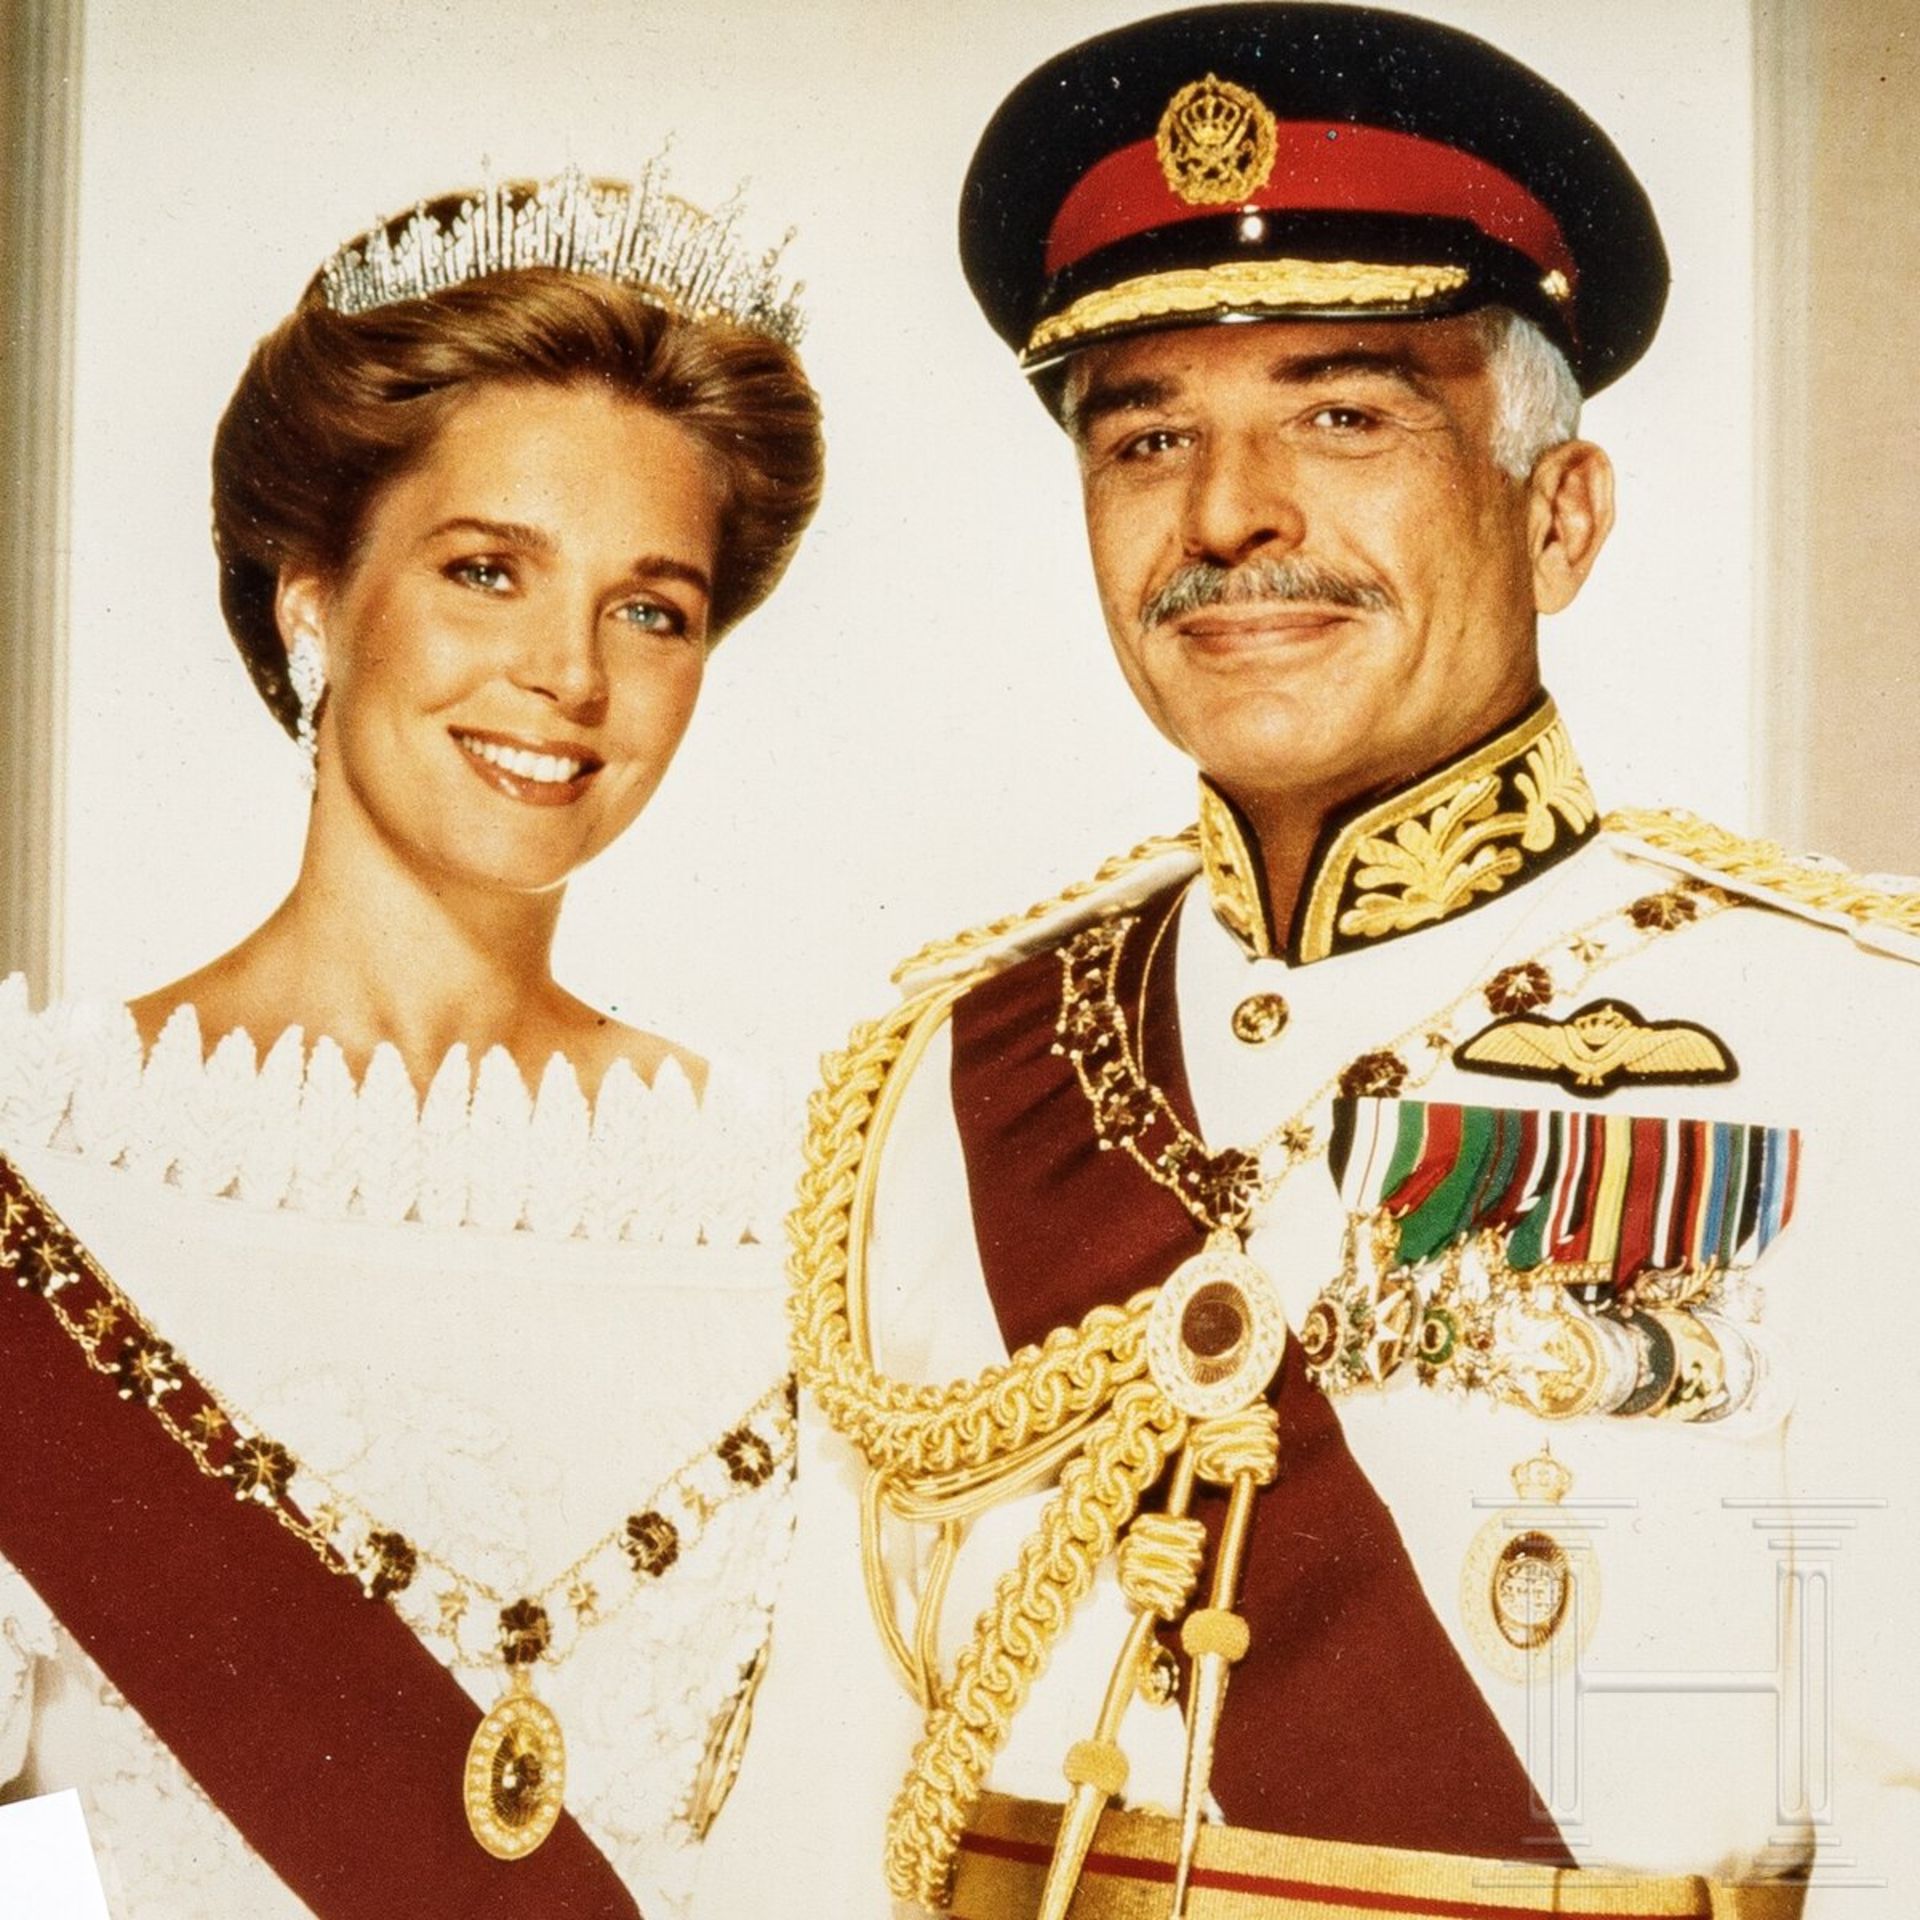 König Hussein I. von Jordanien - Foto, Füller, Visitenkarten - Bild 4 aus 4